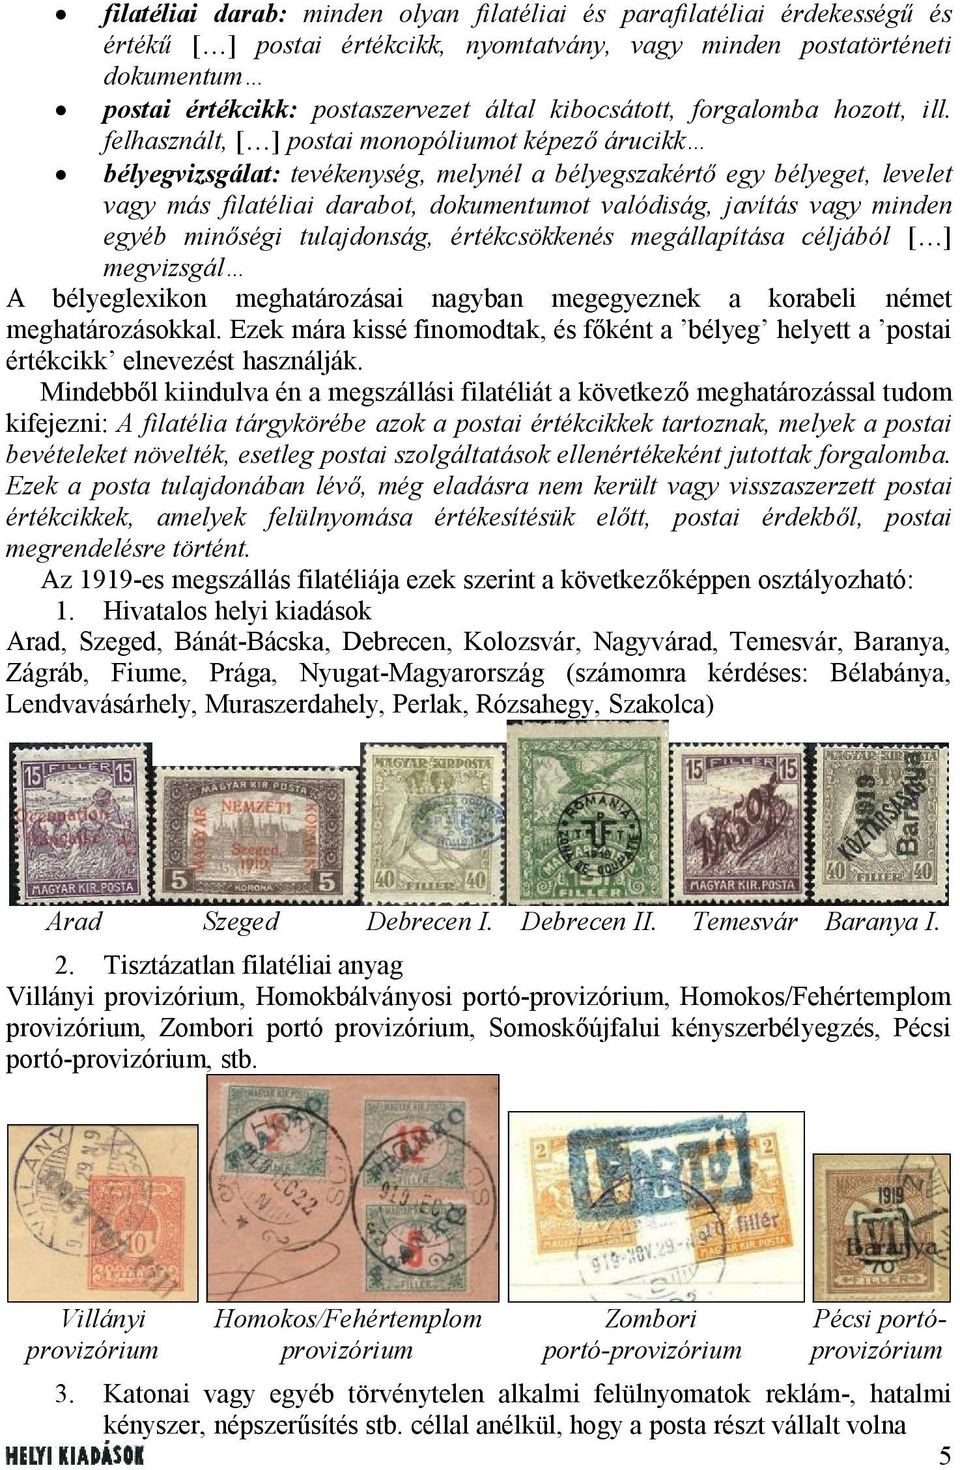 felhasznált, [ ] postai monopóliumot képező árucikk bélyegvizsgálat: tevékenység, melynél a bélyegszakértő egy bélyeget, levelet vagy más filatéliai darabot, dokumentumot valódiság, javítás vagy